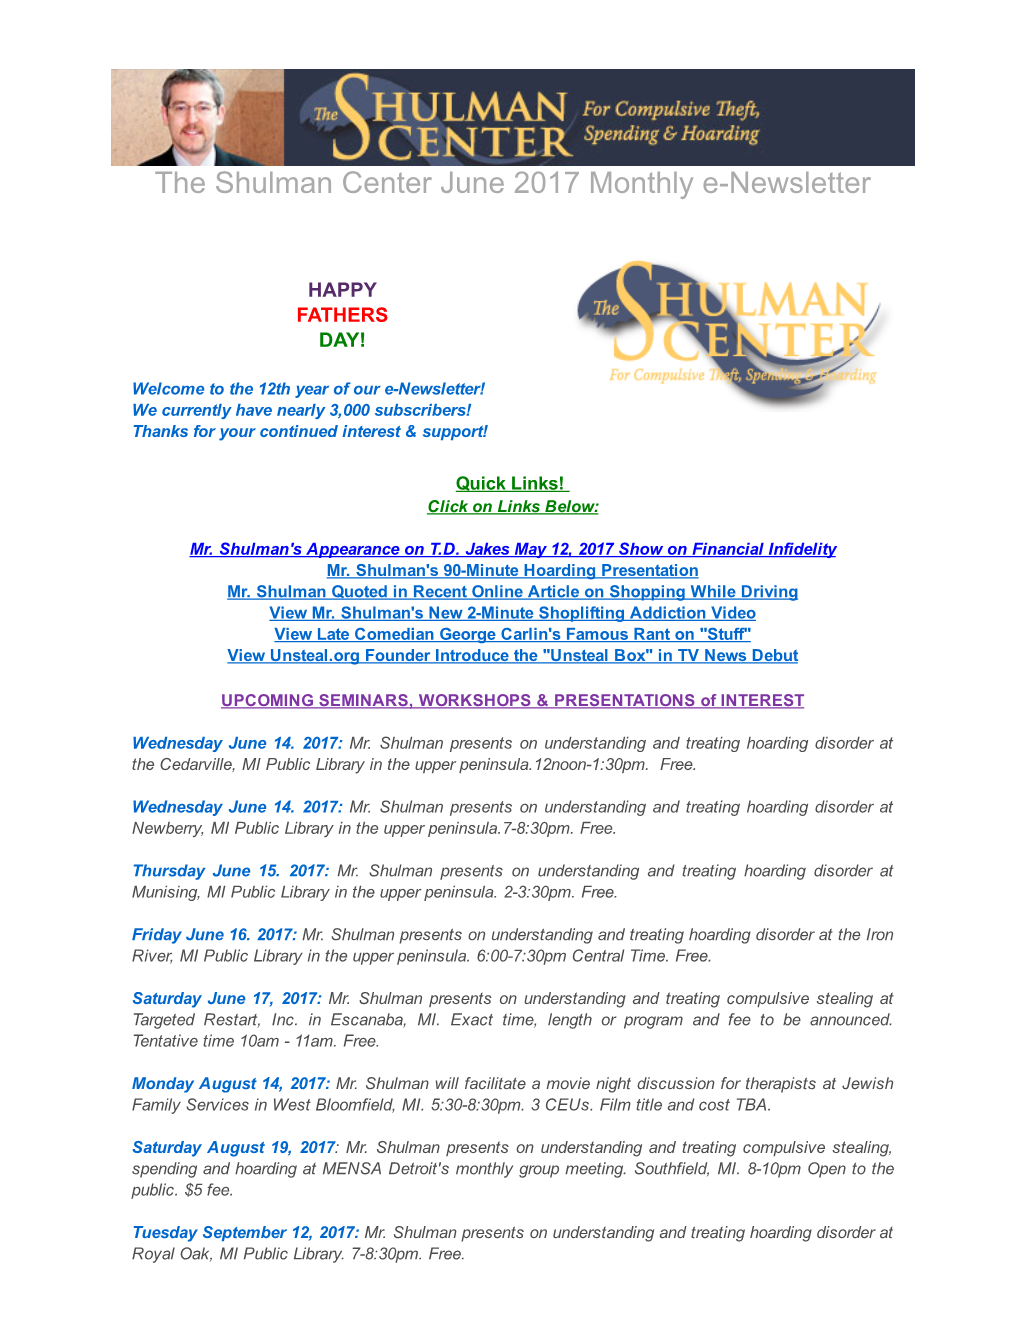 The Shulman Center June 2017 Monthly Enewsletter